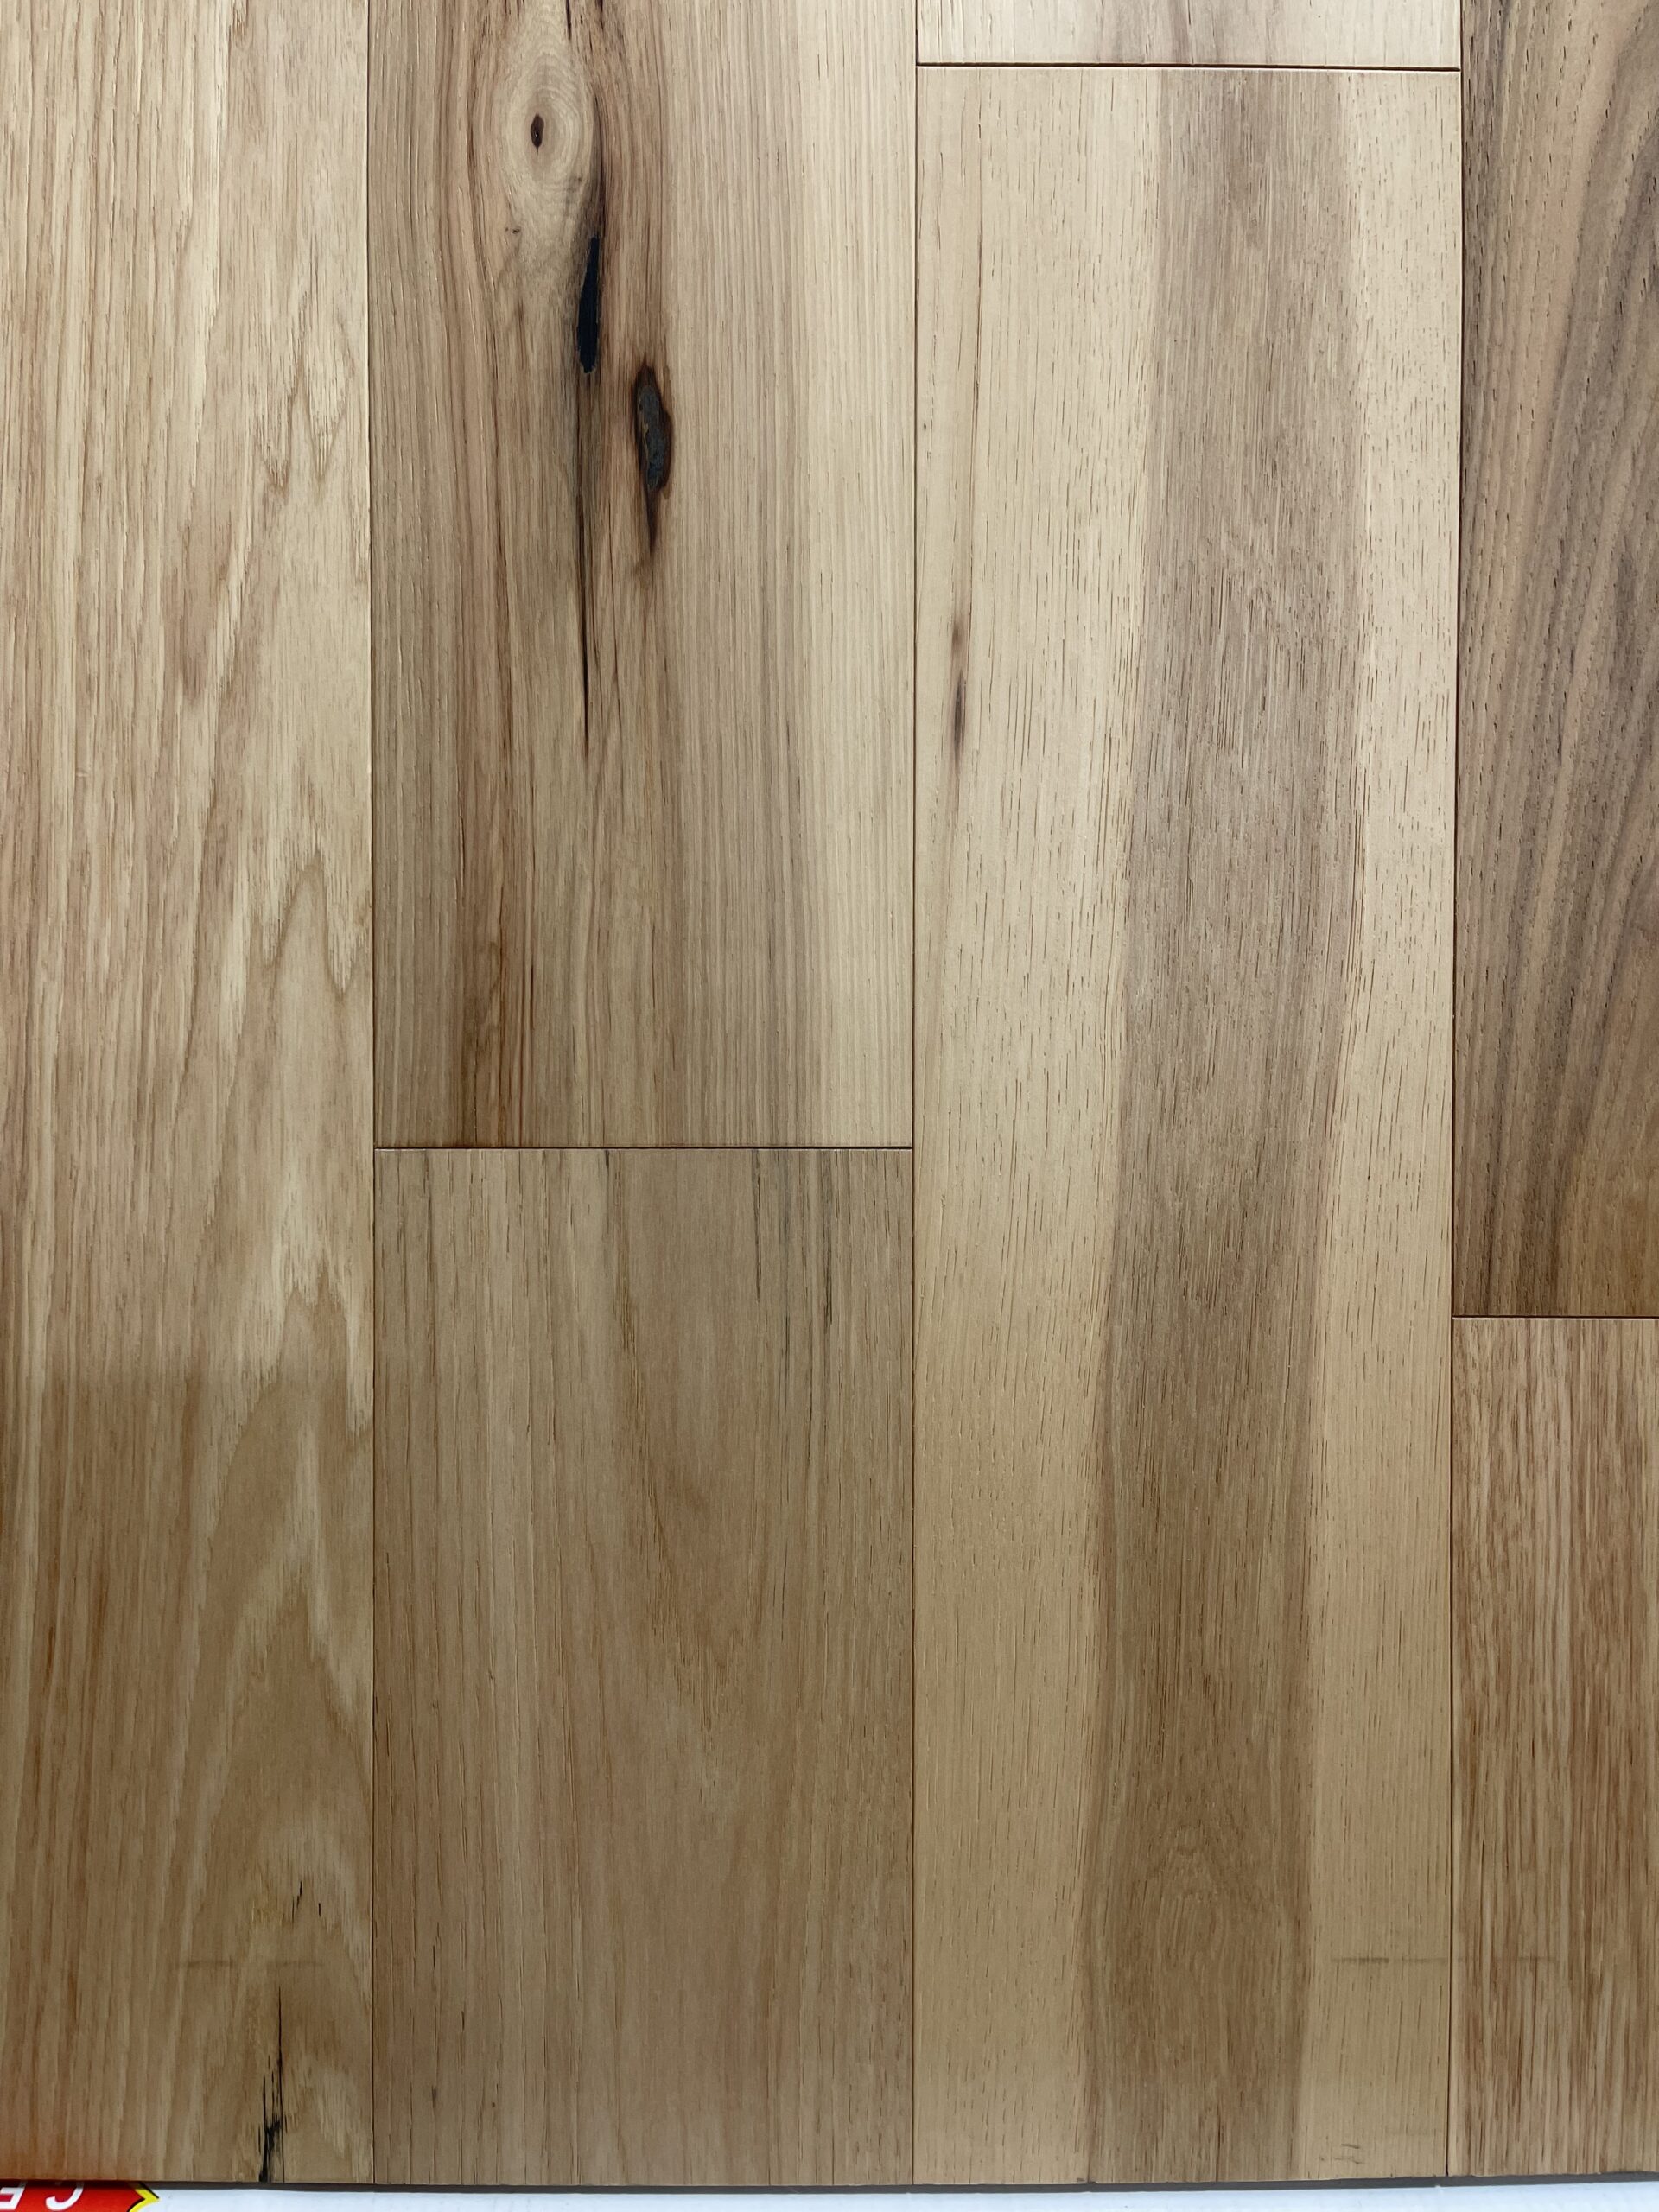 6 1 2 Engineered Hardwood Hickory, No Glue Laminate Wood Flooring